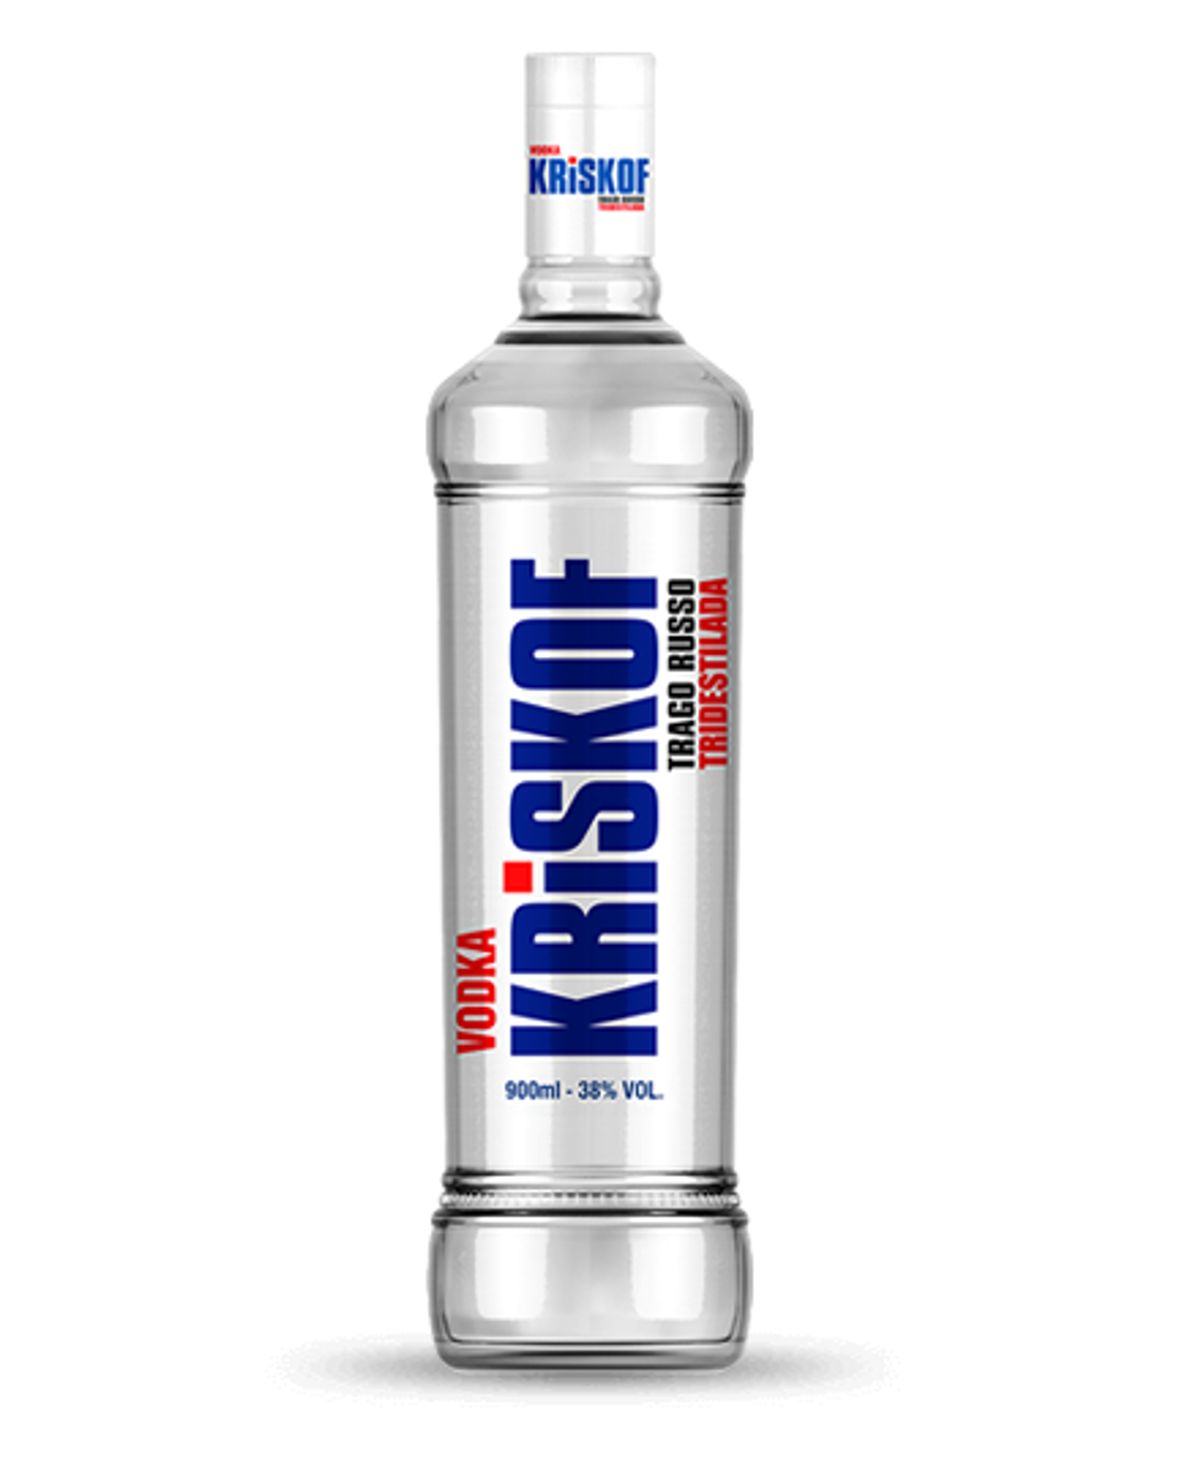 Vodka Kriskof Trago Russo 900ml